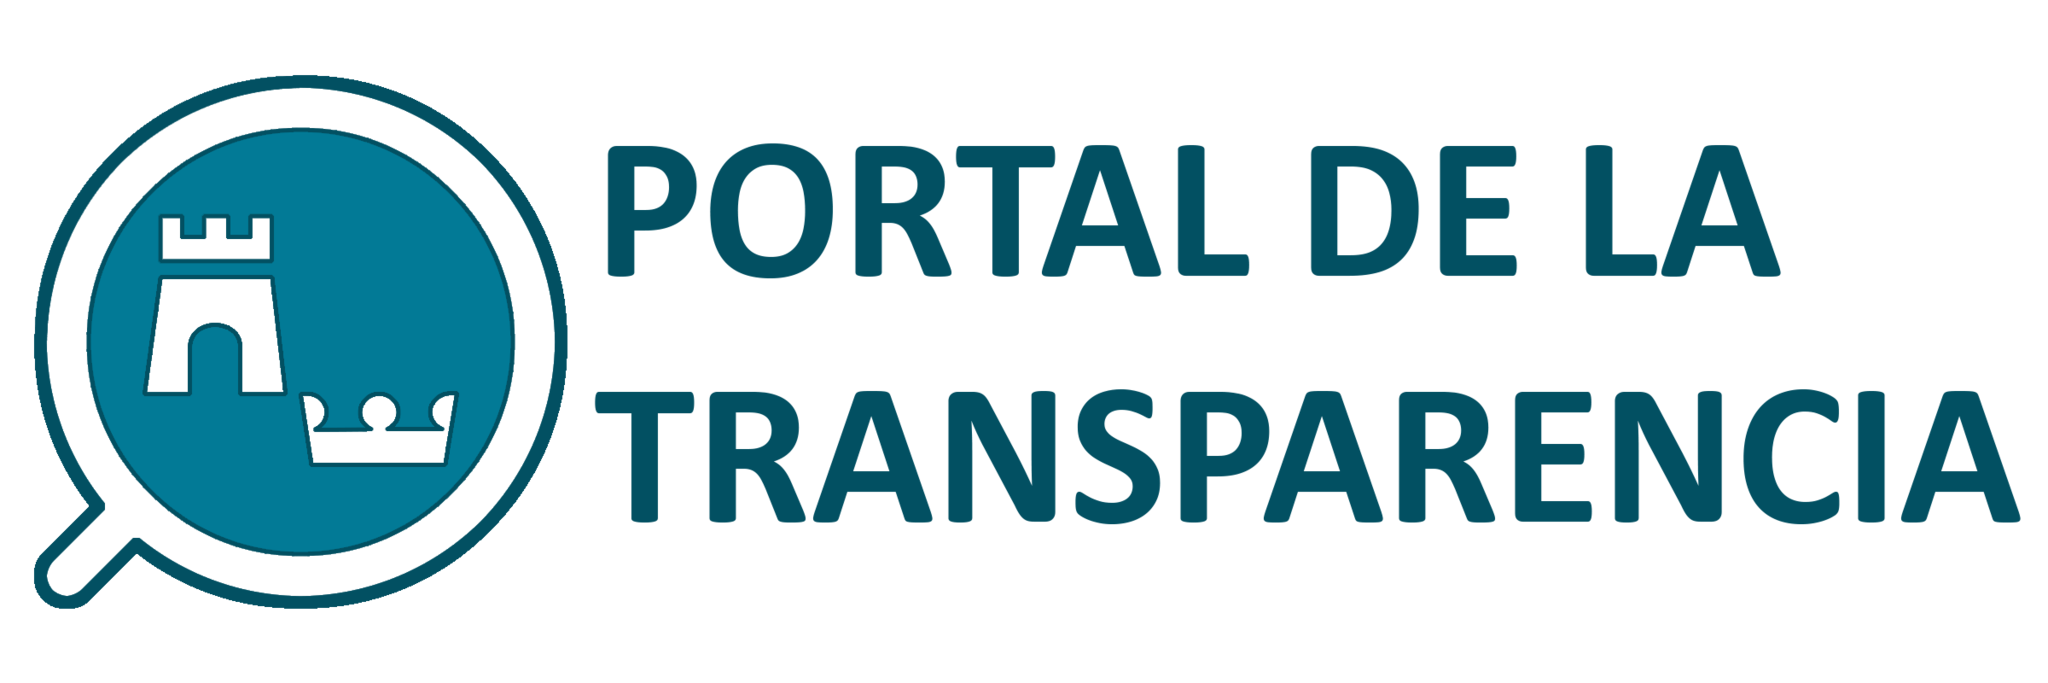 Portal de la transparencia de la Región de Murcia - Este enlace se abrirá en ventana o pestaña nueva